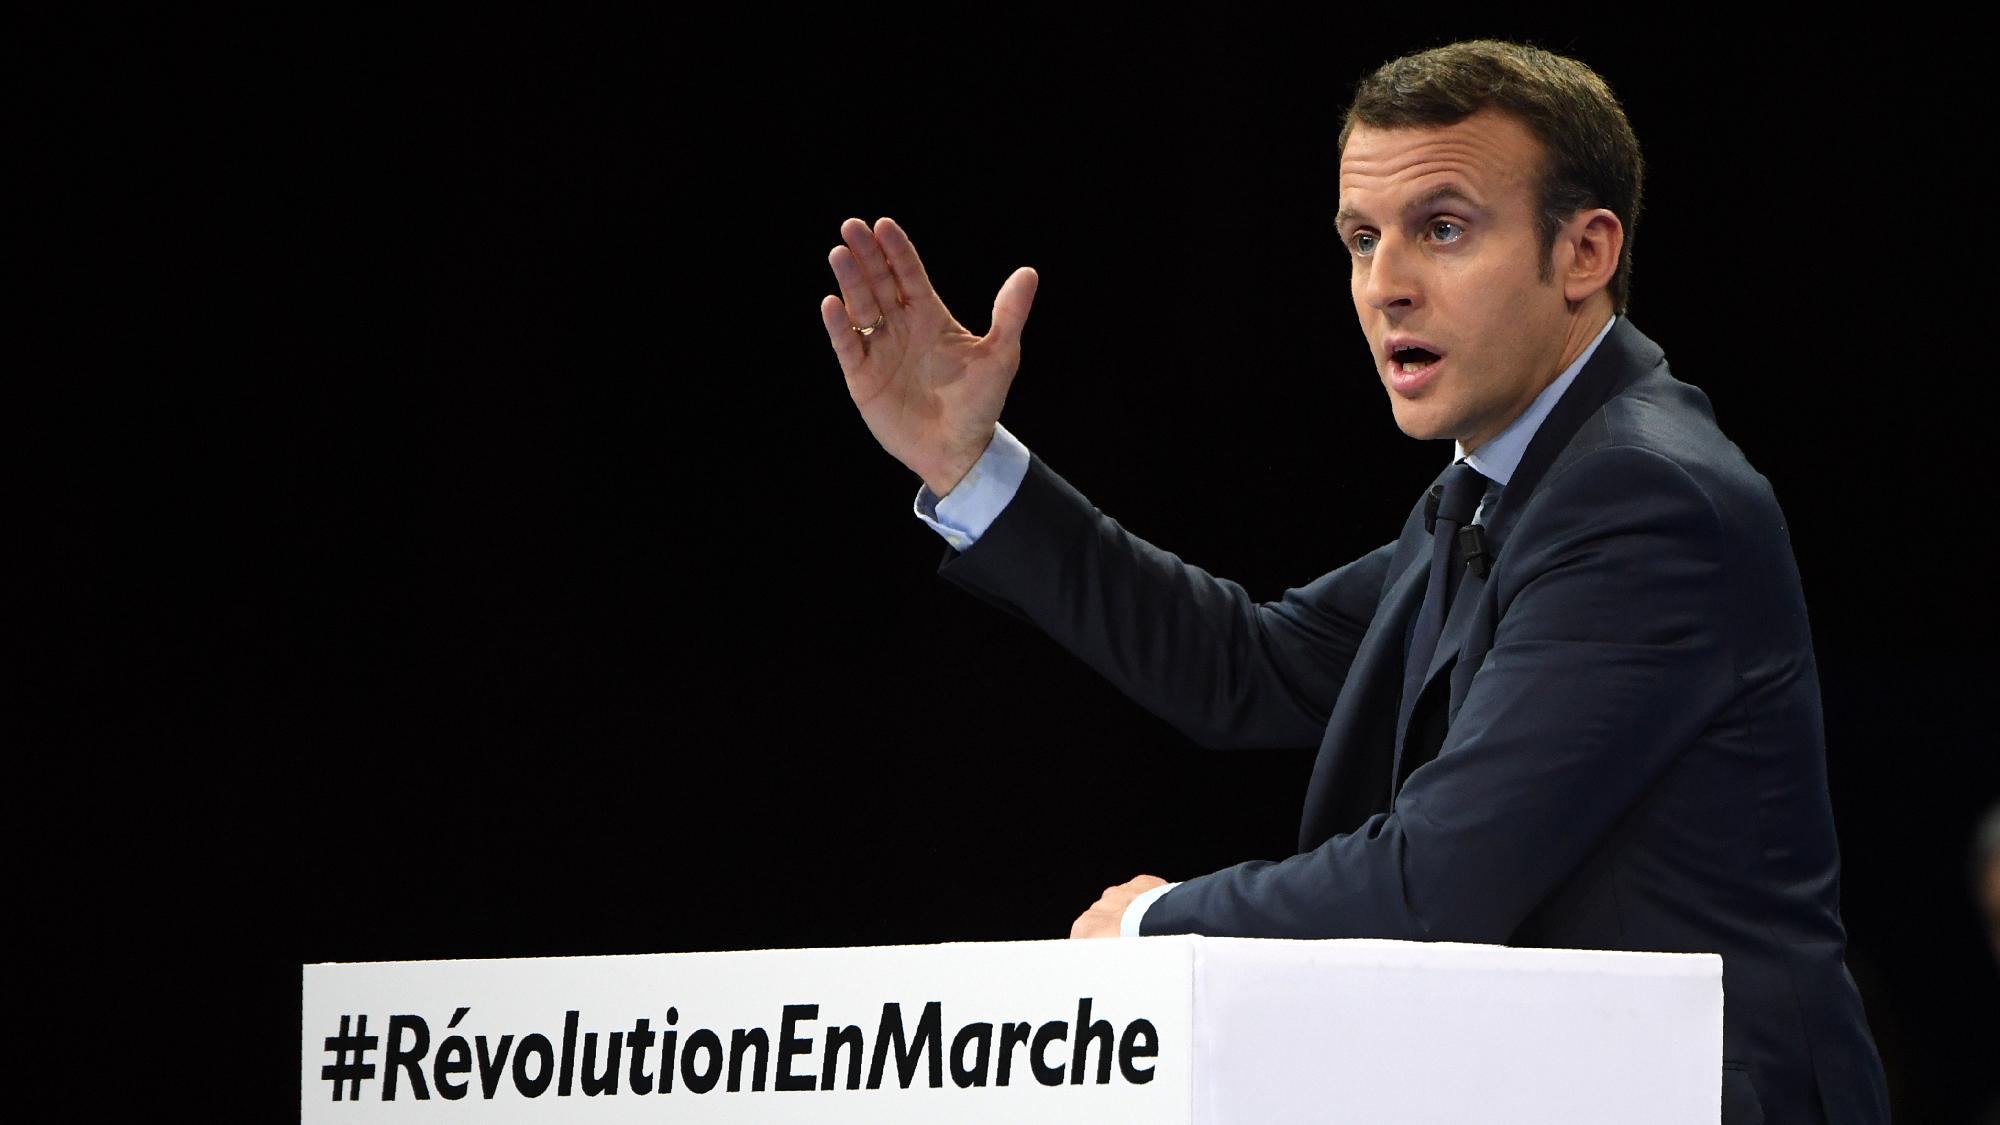 EU-csúcs - Macron: az uniónak vállalnia kell, hogy 2050-ig nullára csökkenti szén-dioxid-kibocsátását